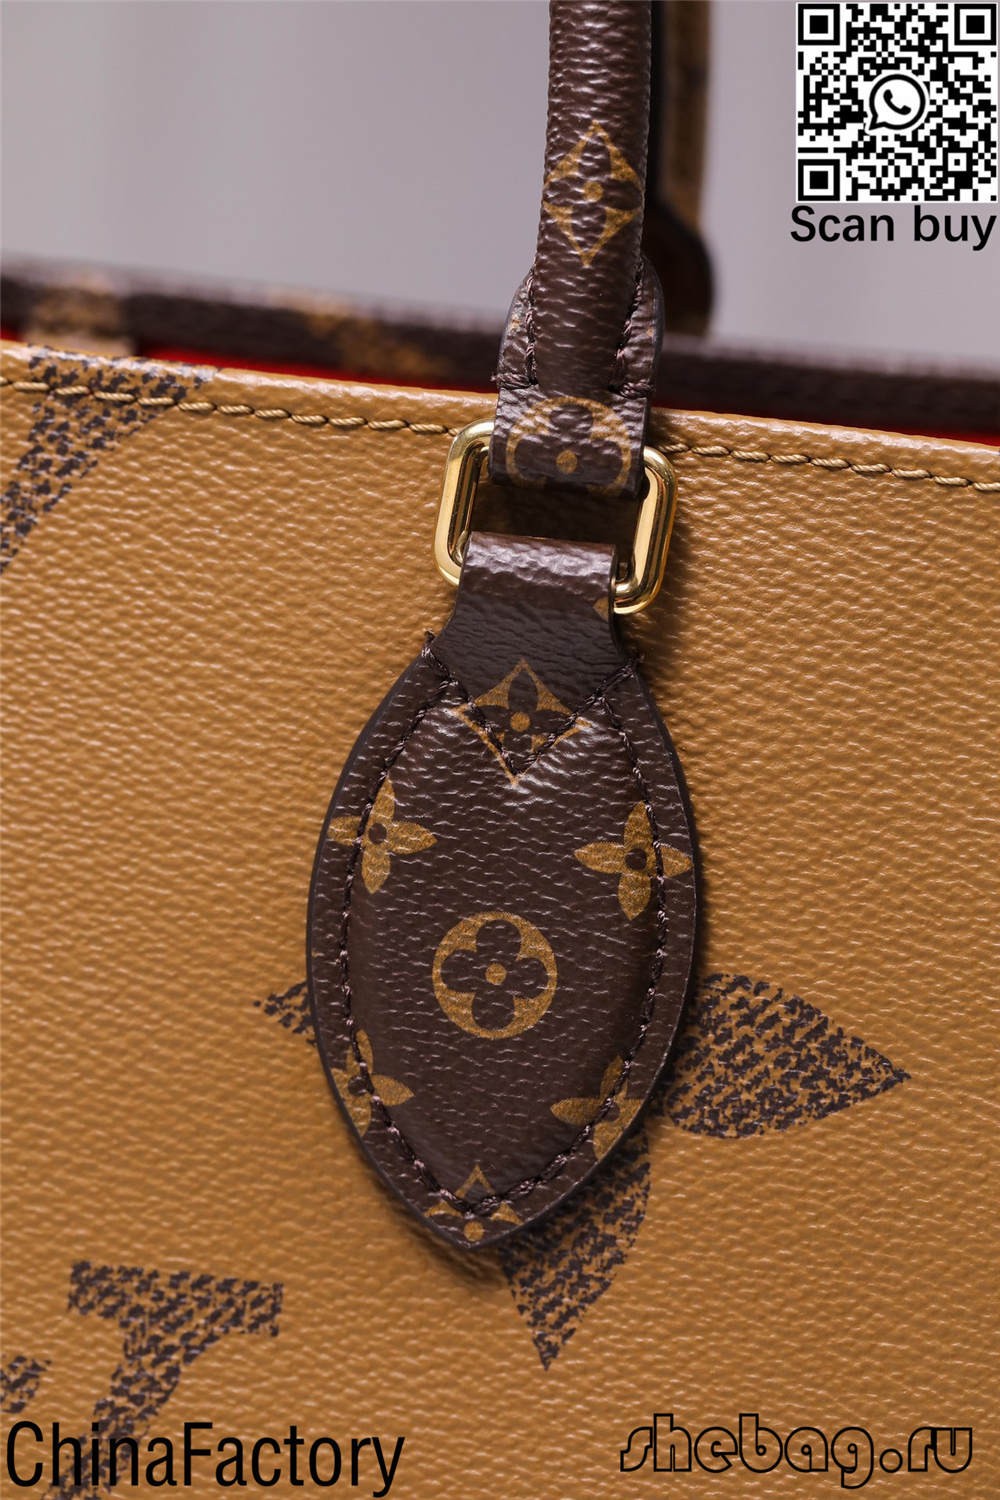 Popisy a ceny repliky tašky louis Vitton (aktualizováno v roce 2022) – Nejkvalitnější falešná taška Louis Vuitton Online obchod, replika značkové tašky ru